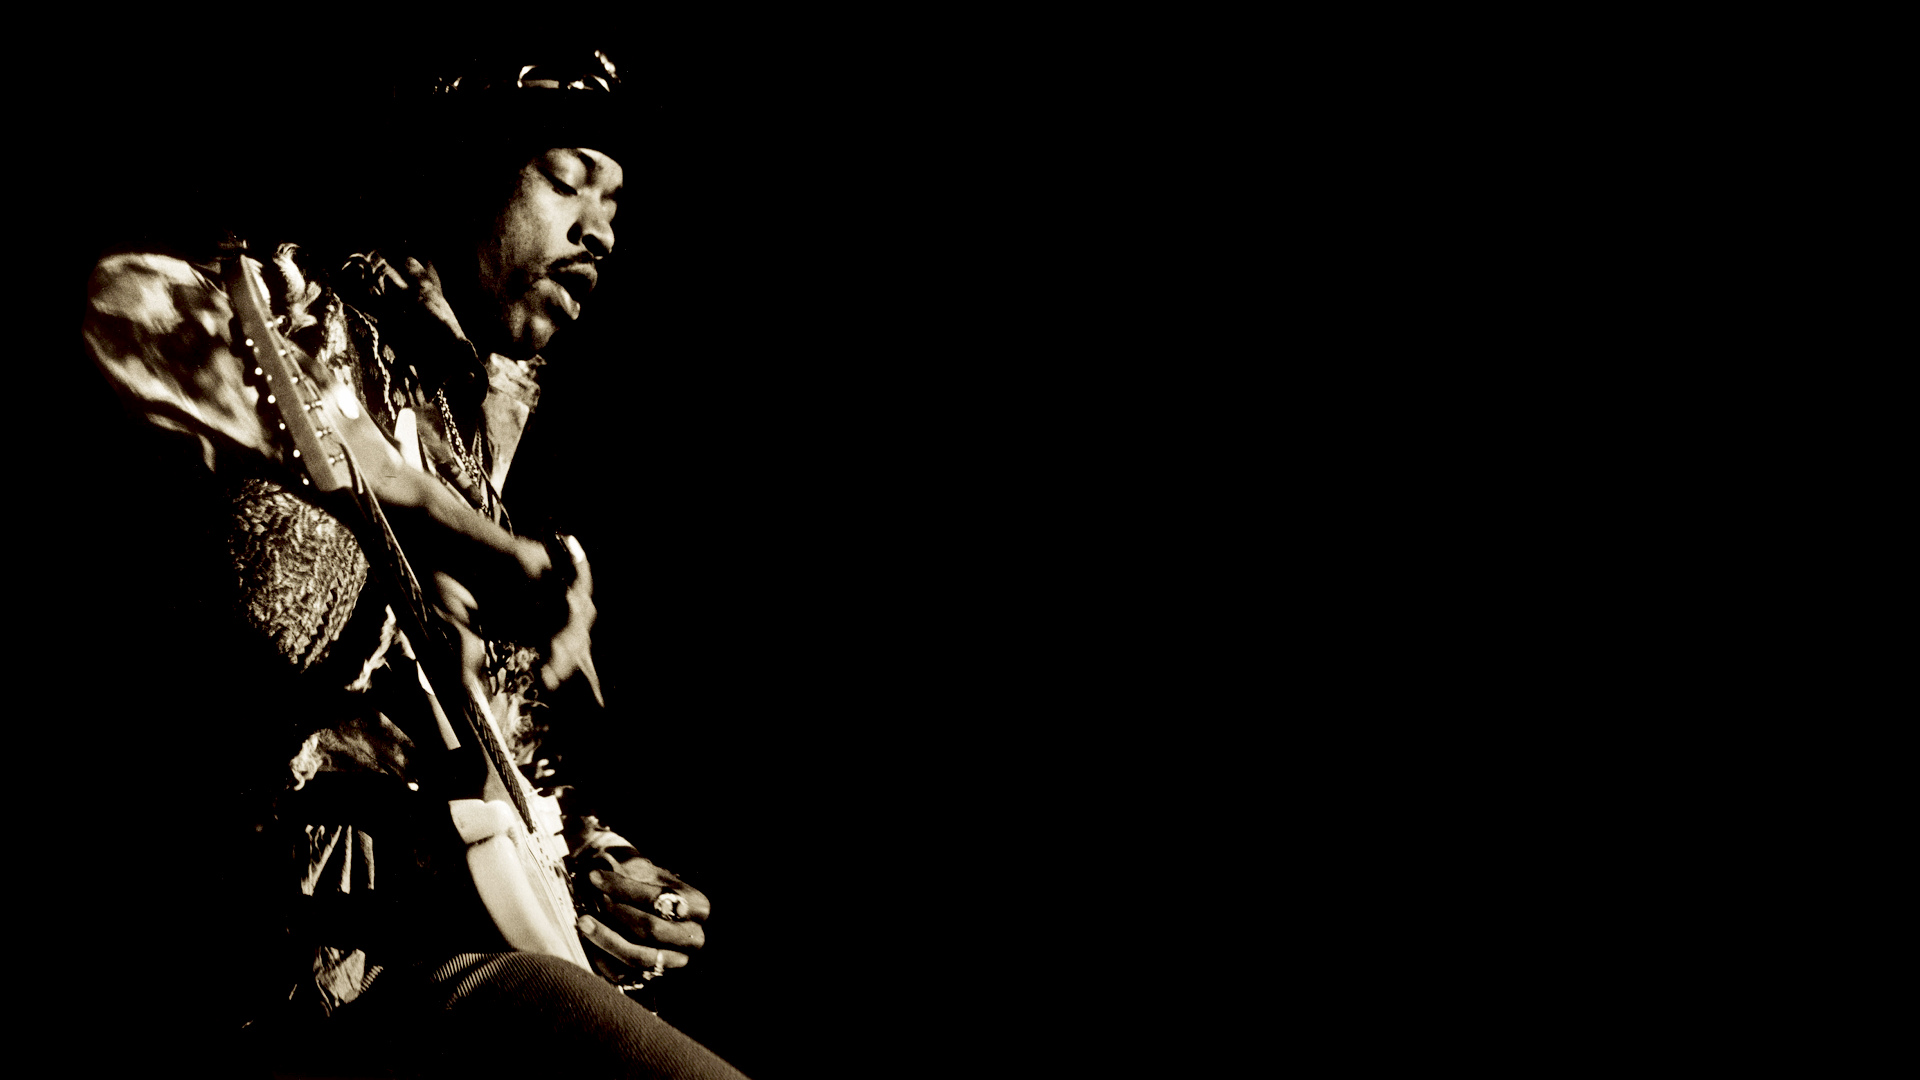 Jimi Hendrix Classic Hard Rock Guitar Guitars Concert Concerts